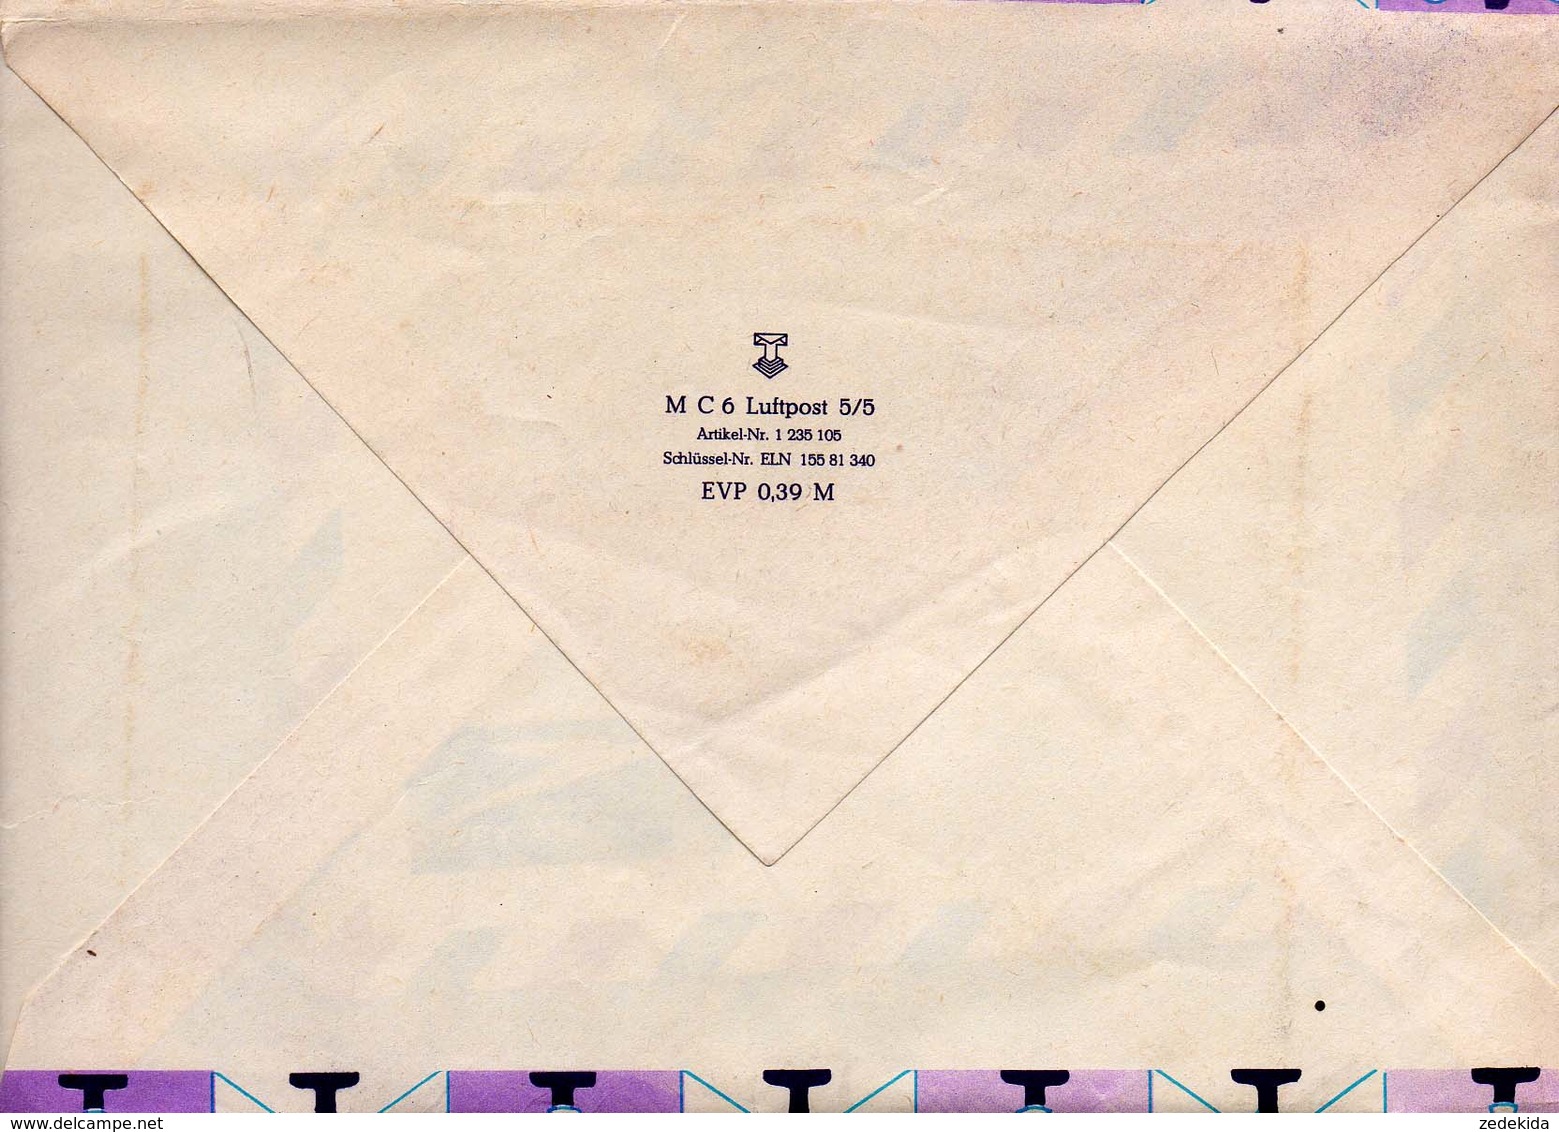 3529 - Orig. Briefpapier Briefumschläge Luftpost - Par Avion By Air Mail - DDR - Sonstige & Ohne Zuordnung